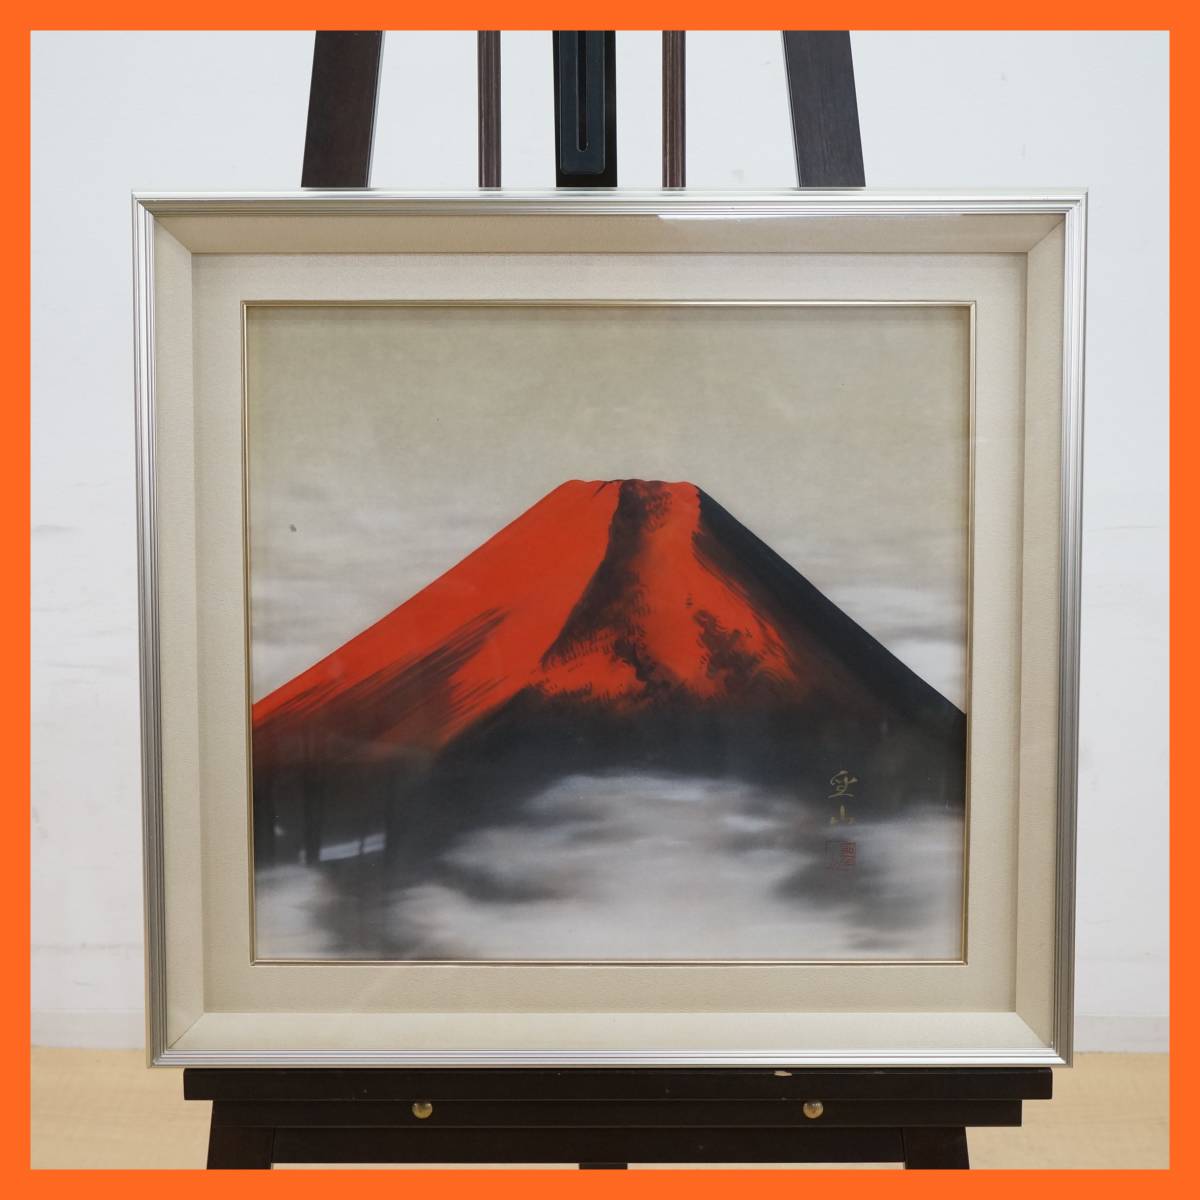 तोहा: [जापानी पेंटिंग] सिज़ान निशिओका द्वारा प्रामाणिक पेंटिंग, रेड फ़ूजी माउंट फ़ूजी फ़्रेम आयाम की पेंटिंग लगभग। 64.1 सेमी x 60.3 सेमी कलाकृति फ़्रेमयुक्त वस्तु शुभ चित्र आंतरिक ★मुफ़्त शिपिंग★, चित्रकारी, जापानी पेंटिंग, अन्य